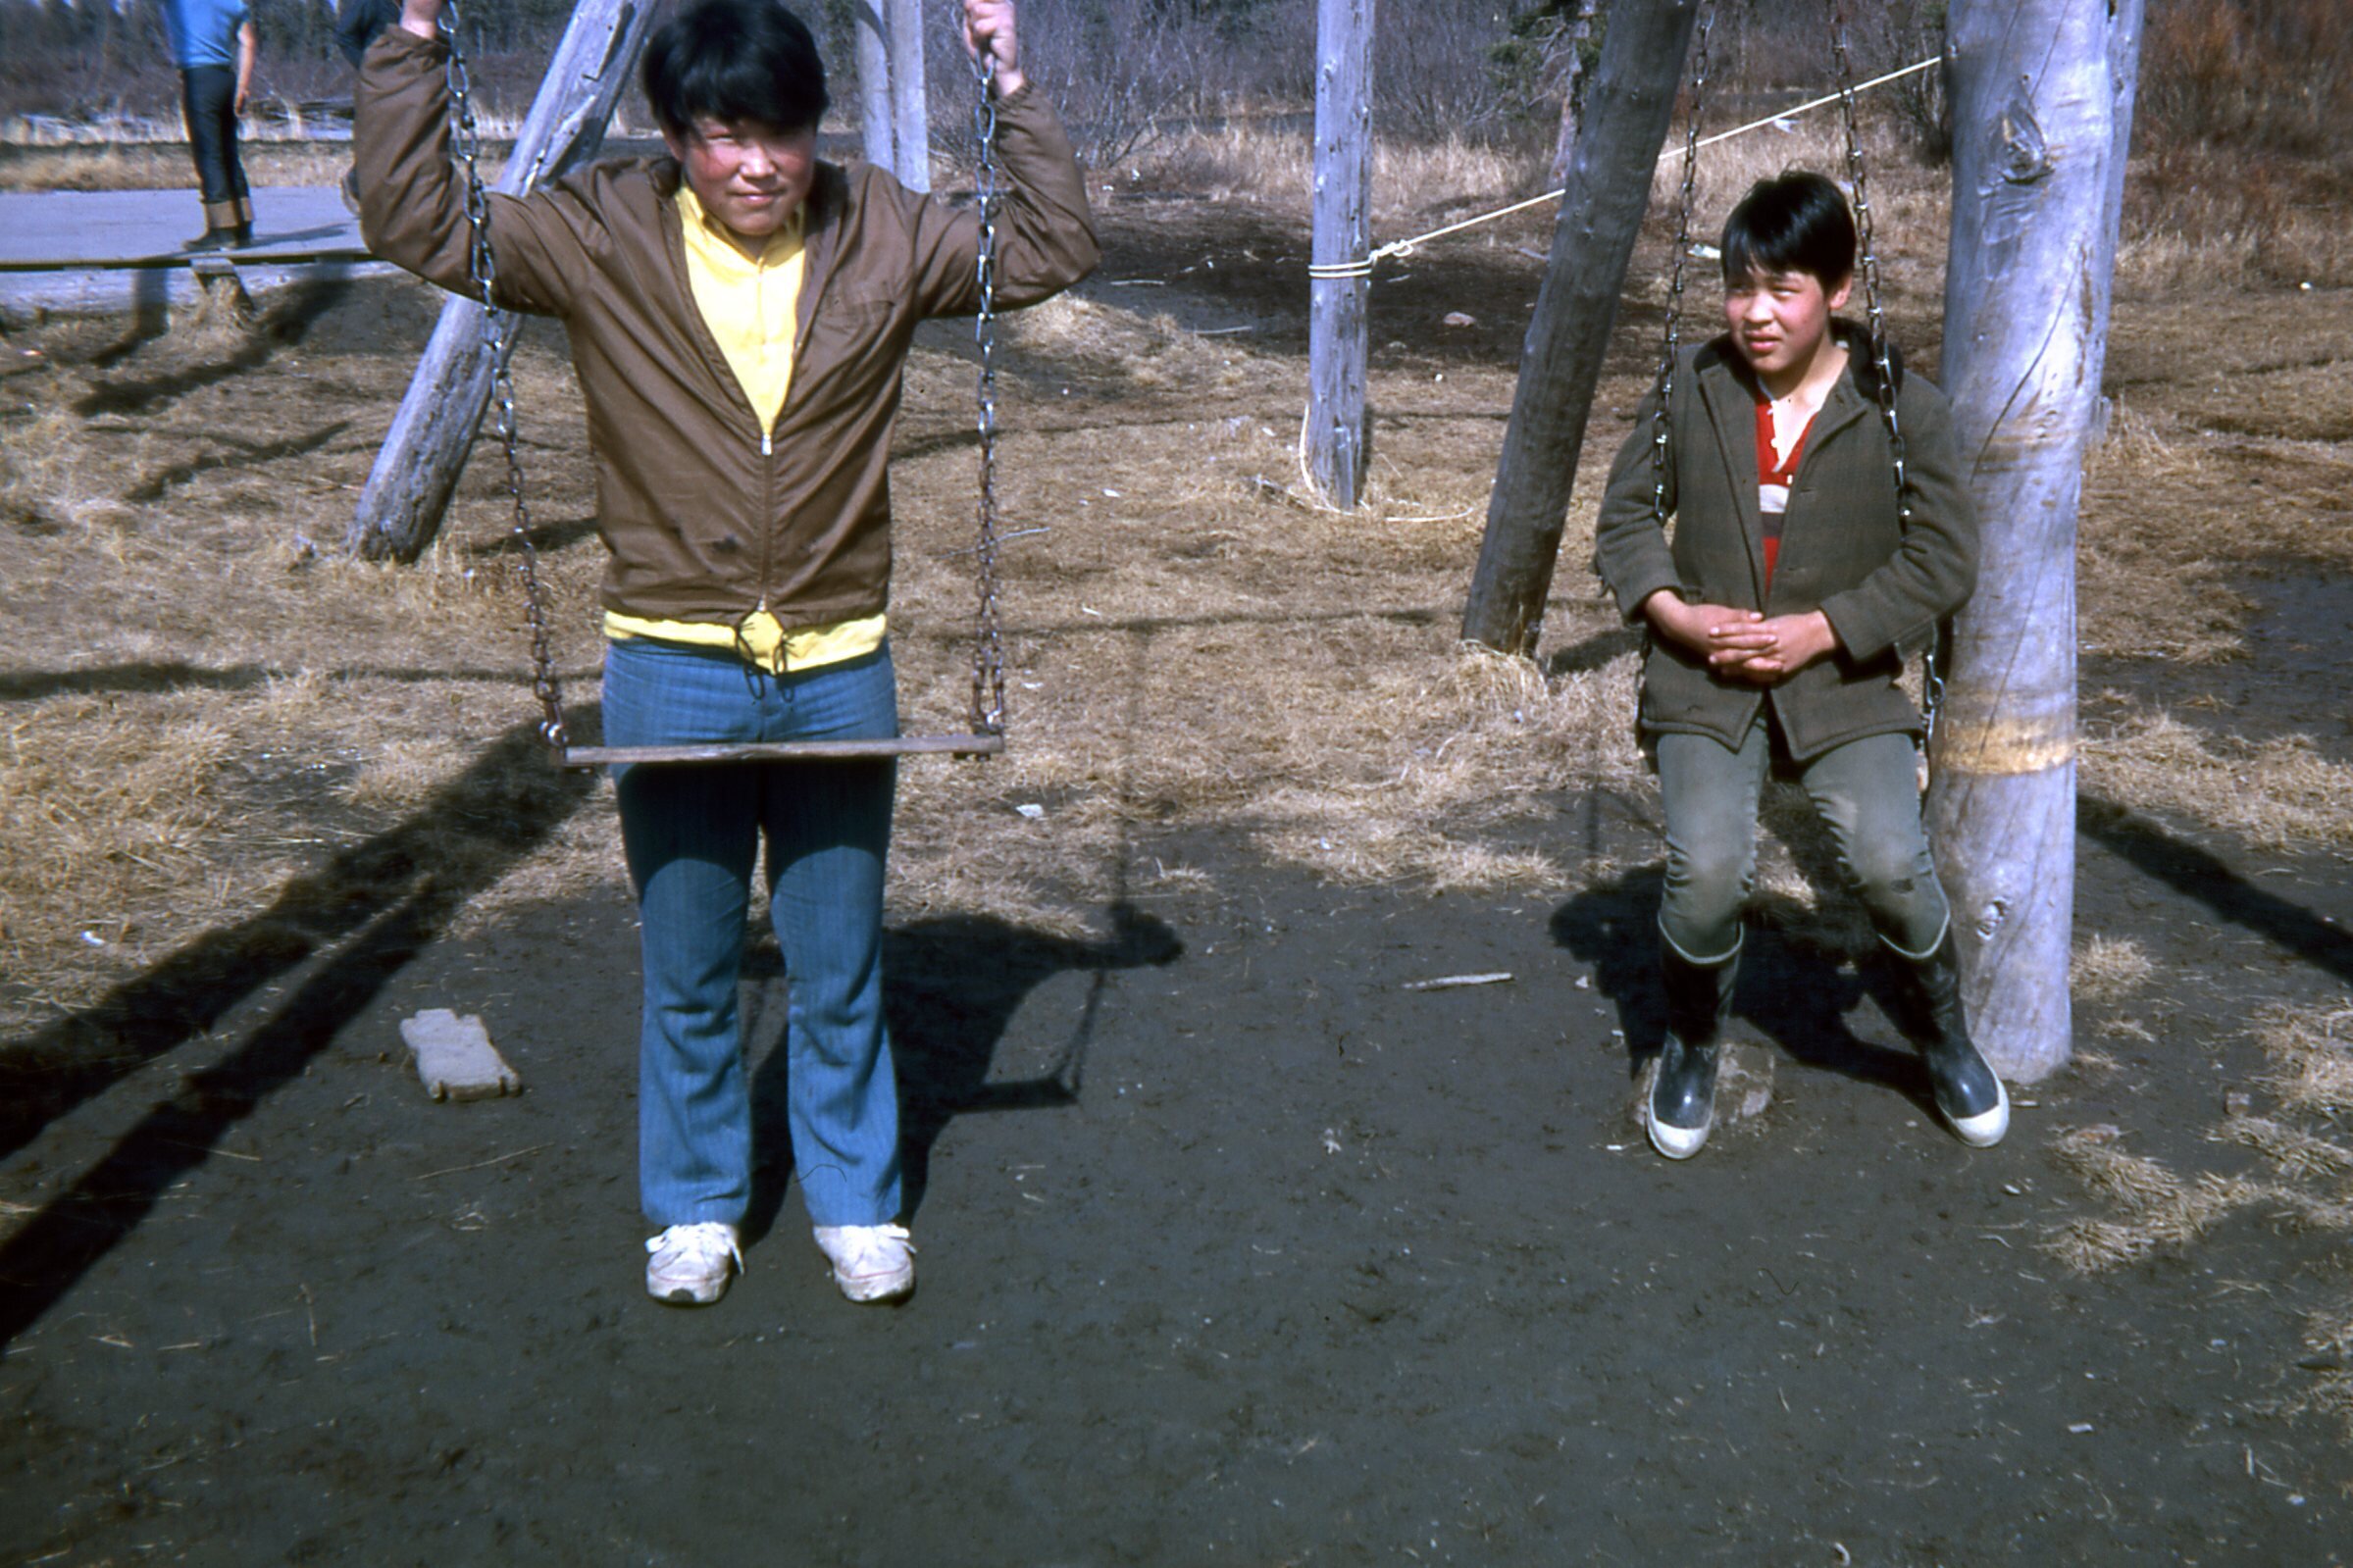 1971 Boys on the swings.jpg